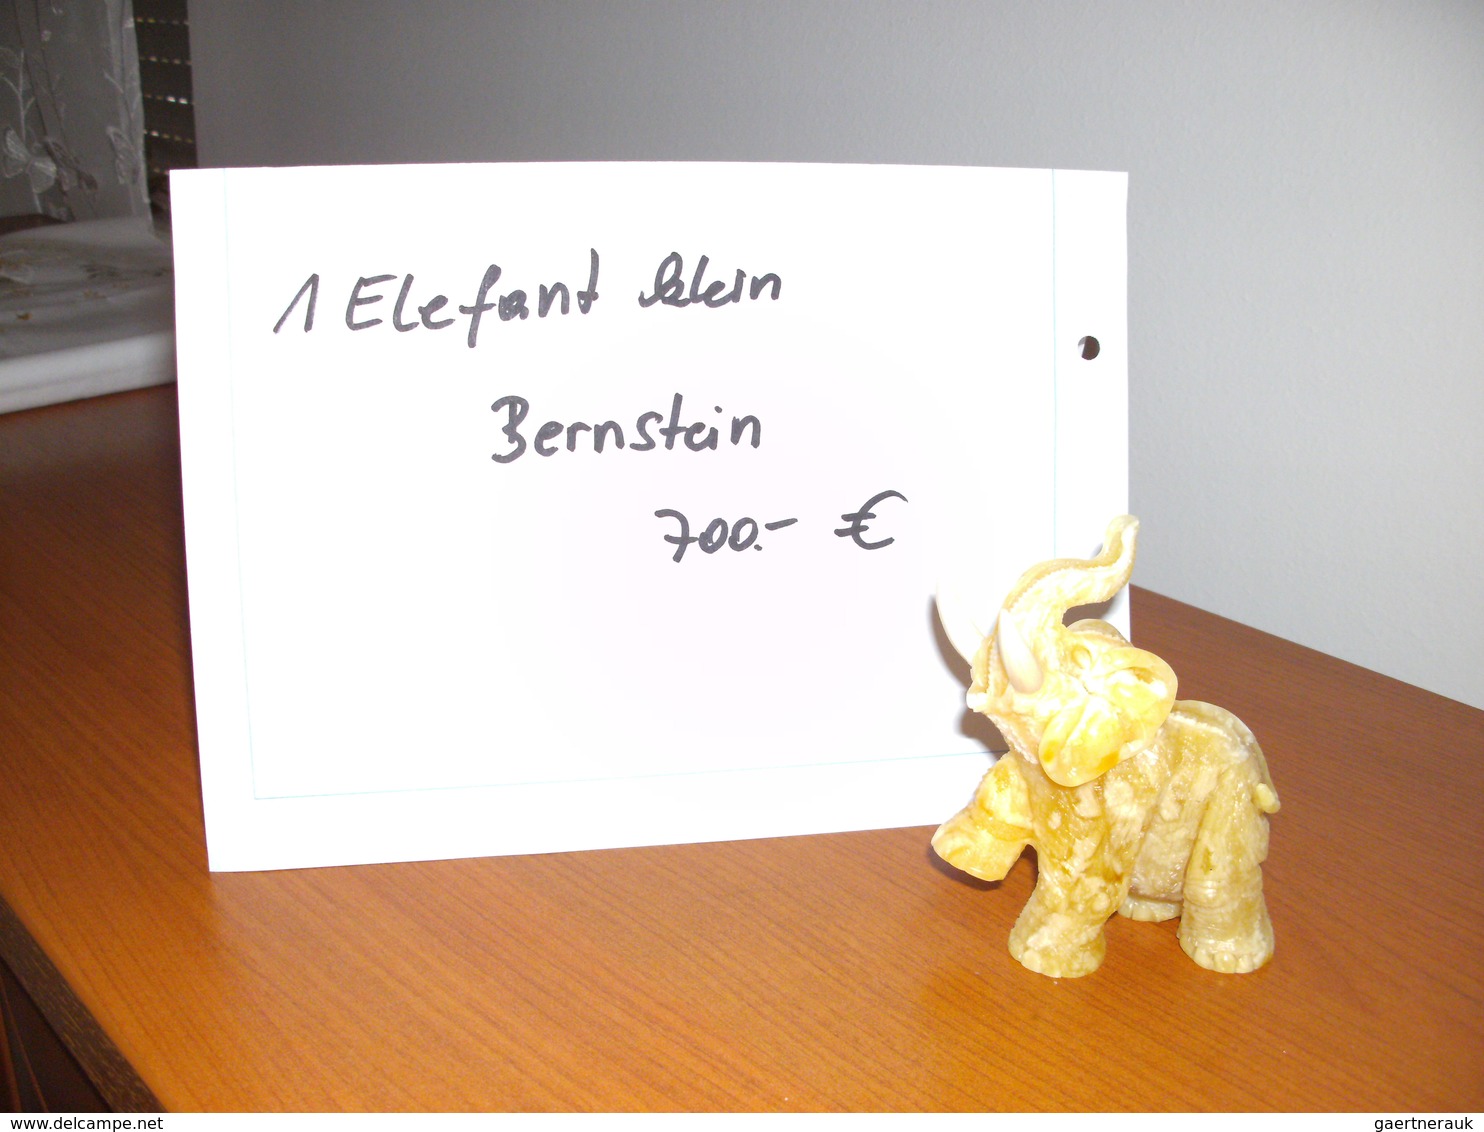 32973 Varia (im Briefmarkenkatalog): EDELSTEIN-ELEFANTEN: unglaubliche Sammlung von 122 herrlichen Elefant